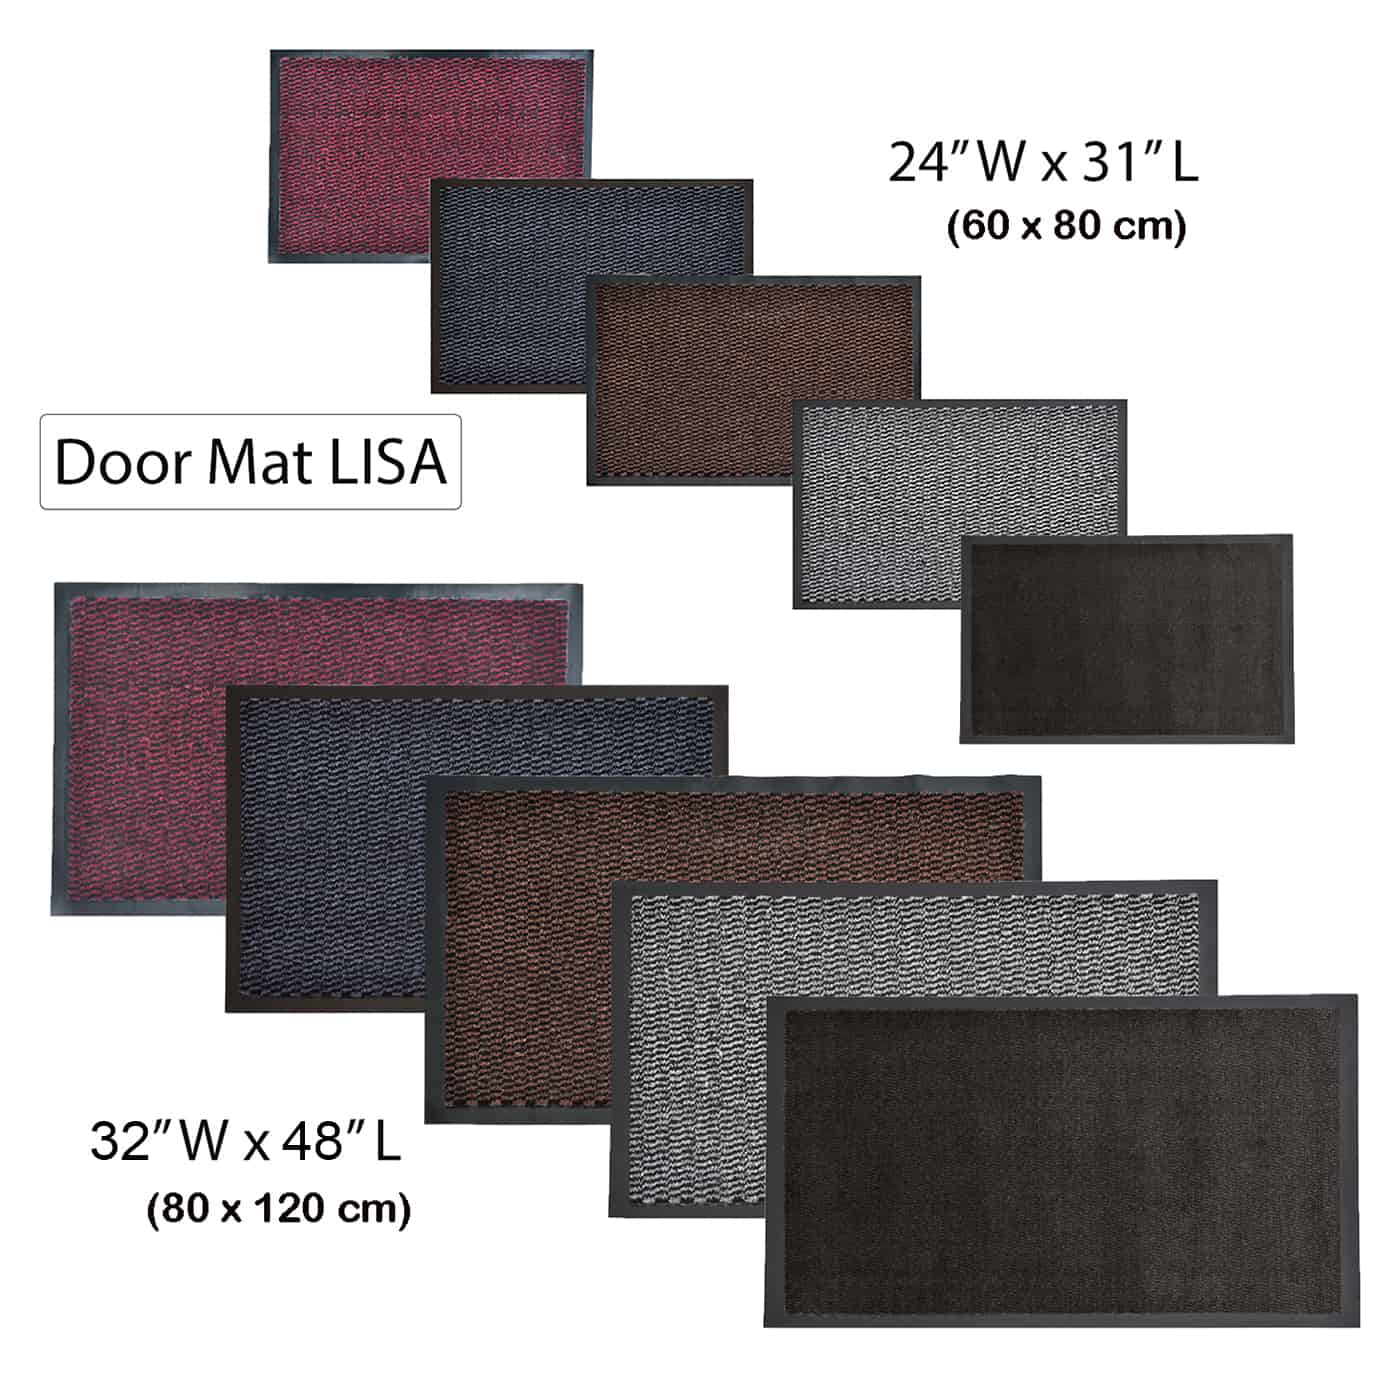 Indoor Door Mat Lisa 31 L x 24 W Inch PP-PVC - Burgundy